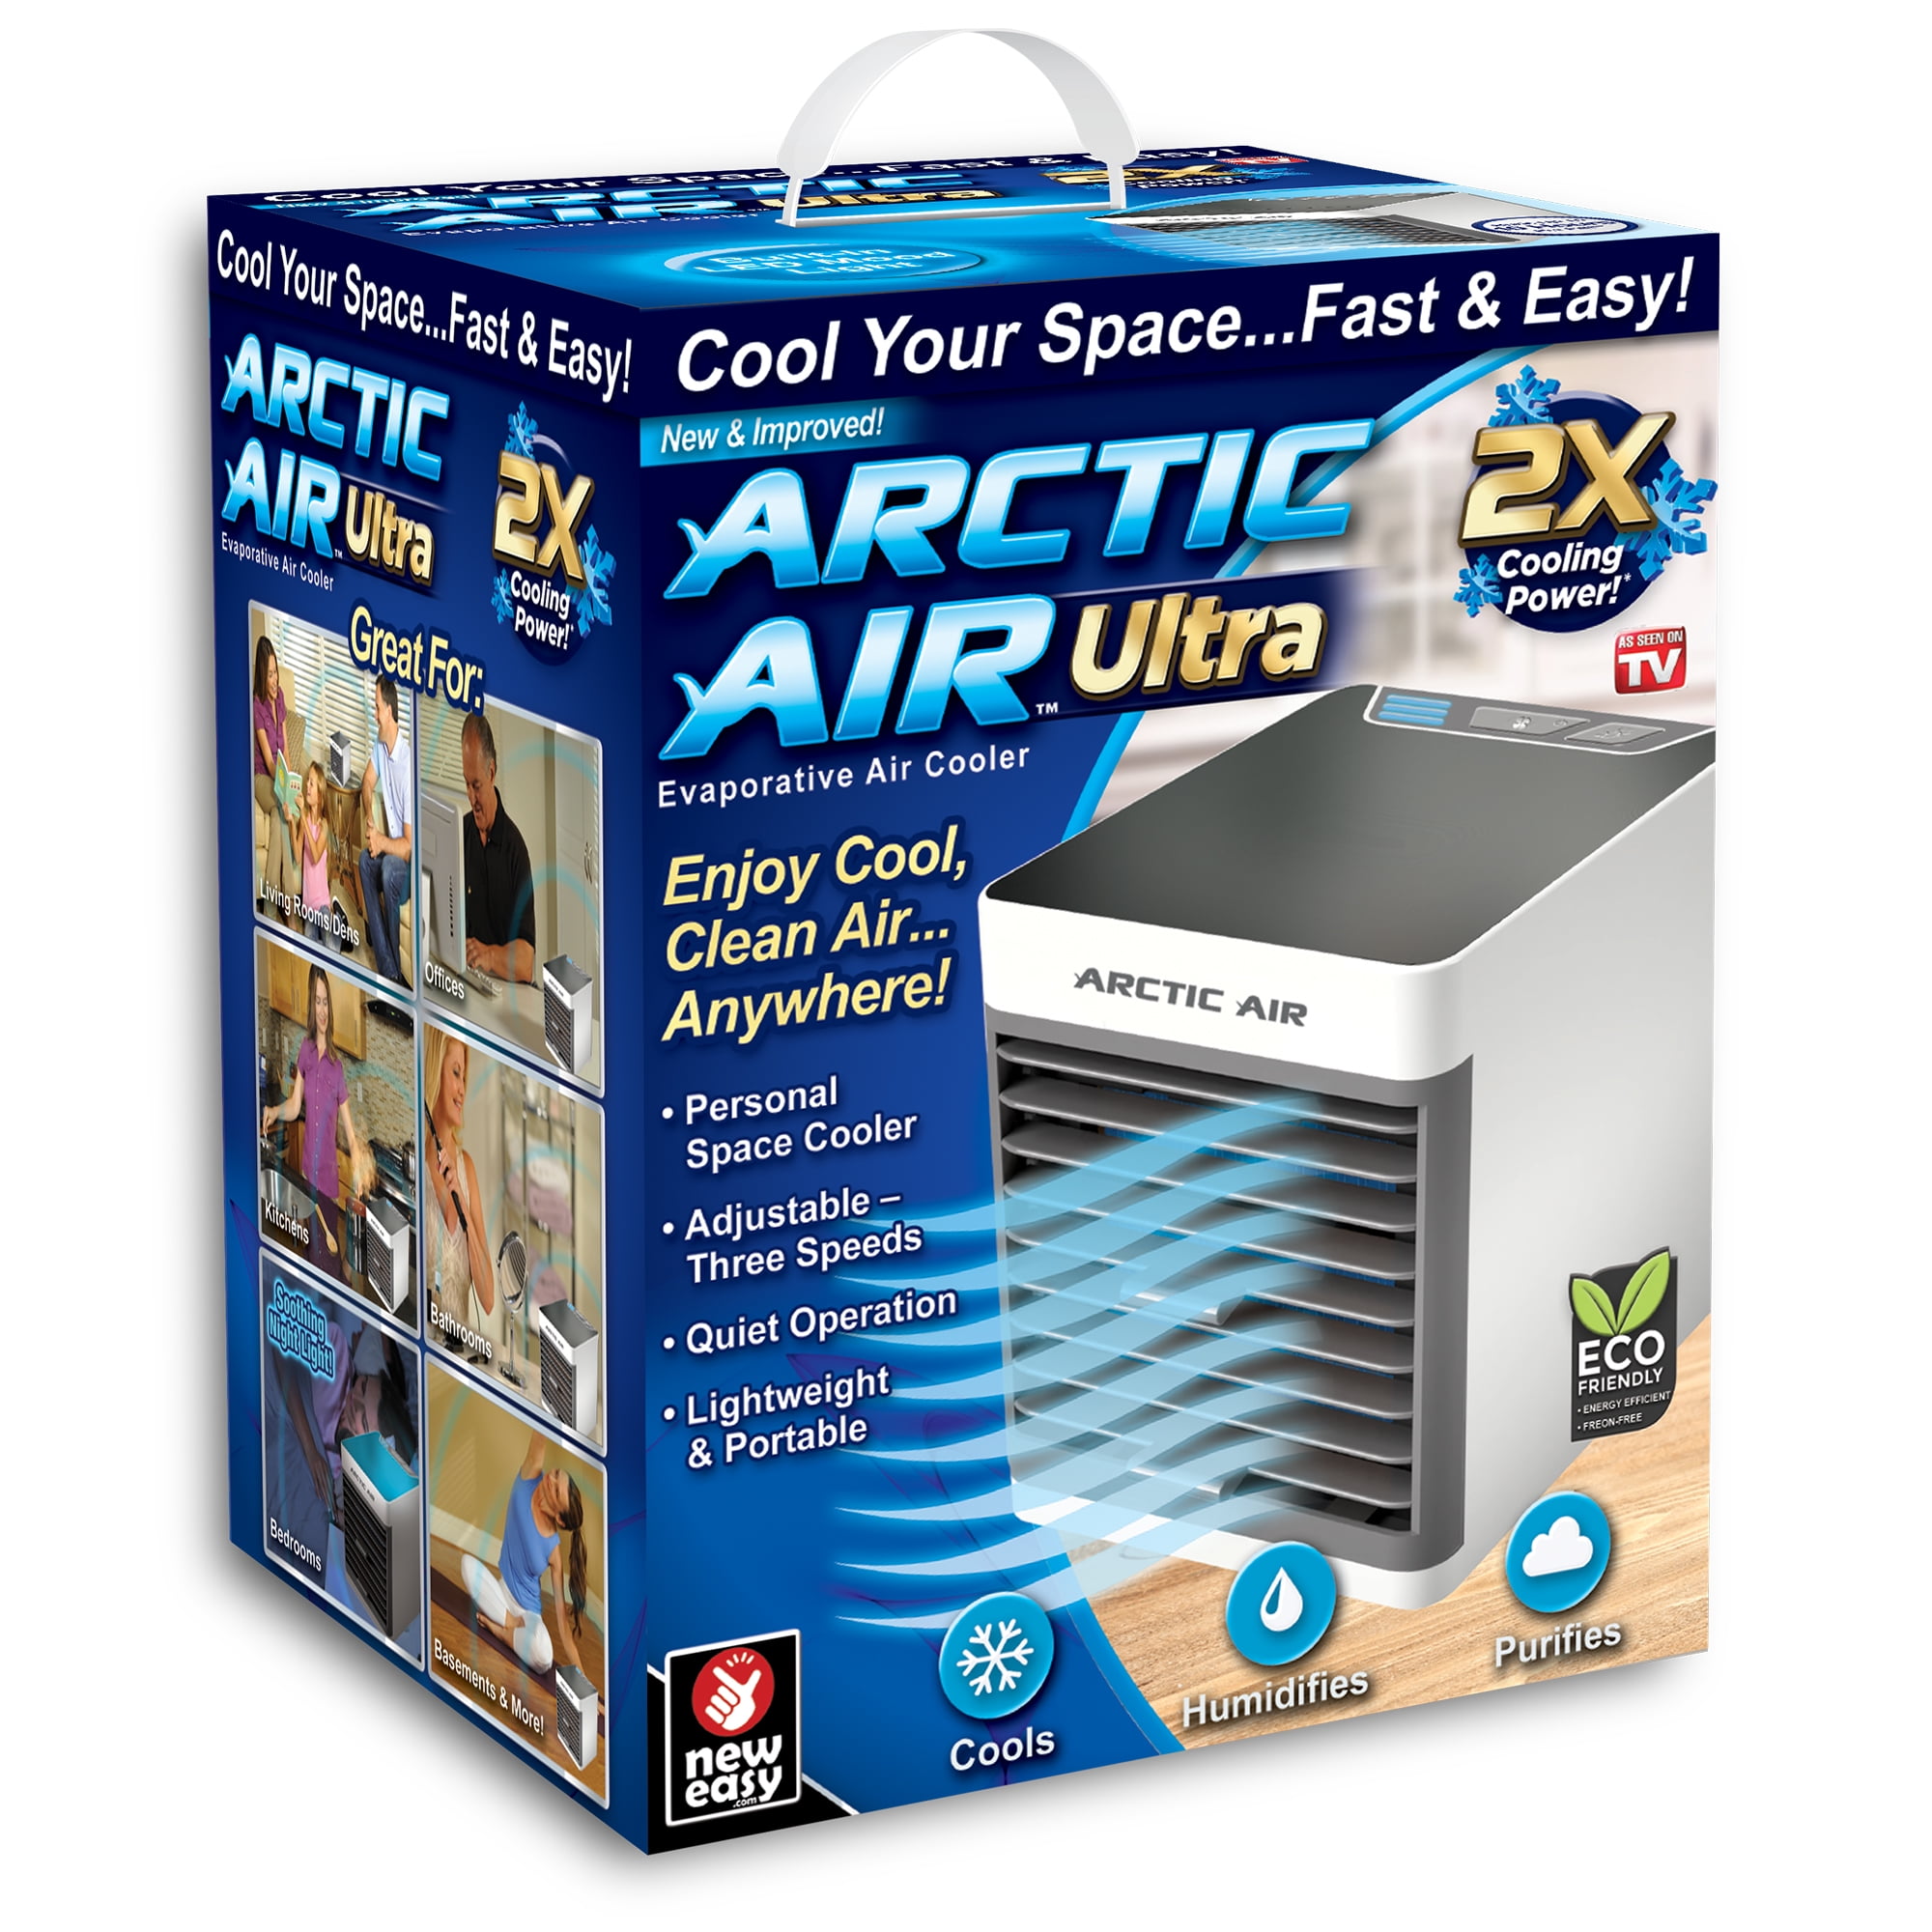 arctic air evaporative air cooler